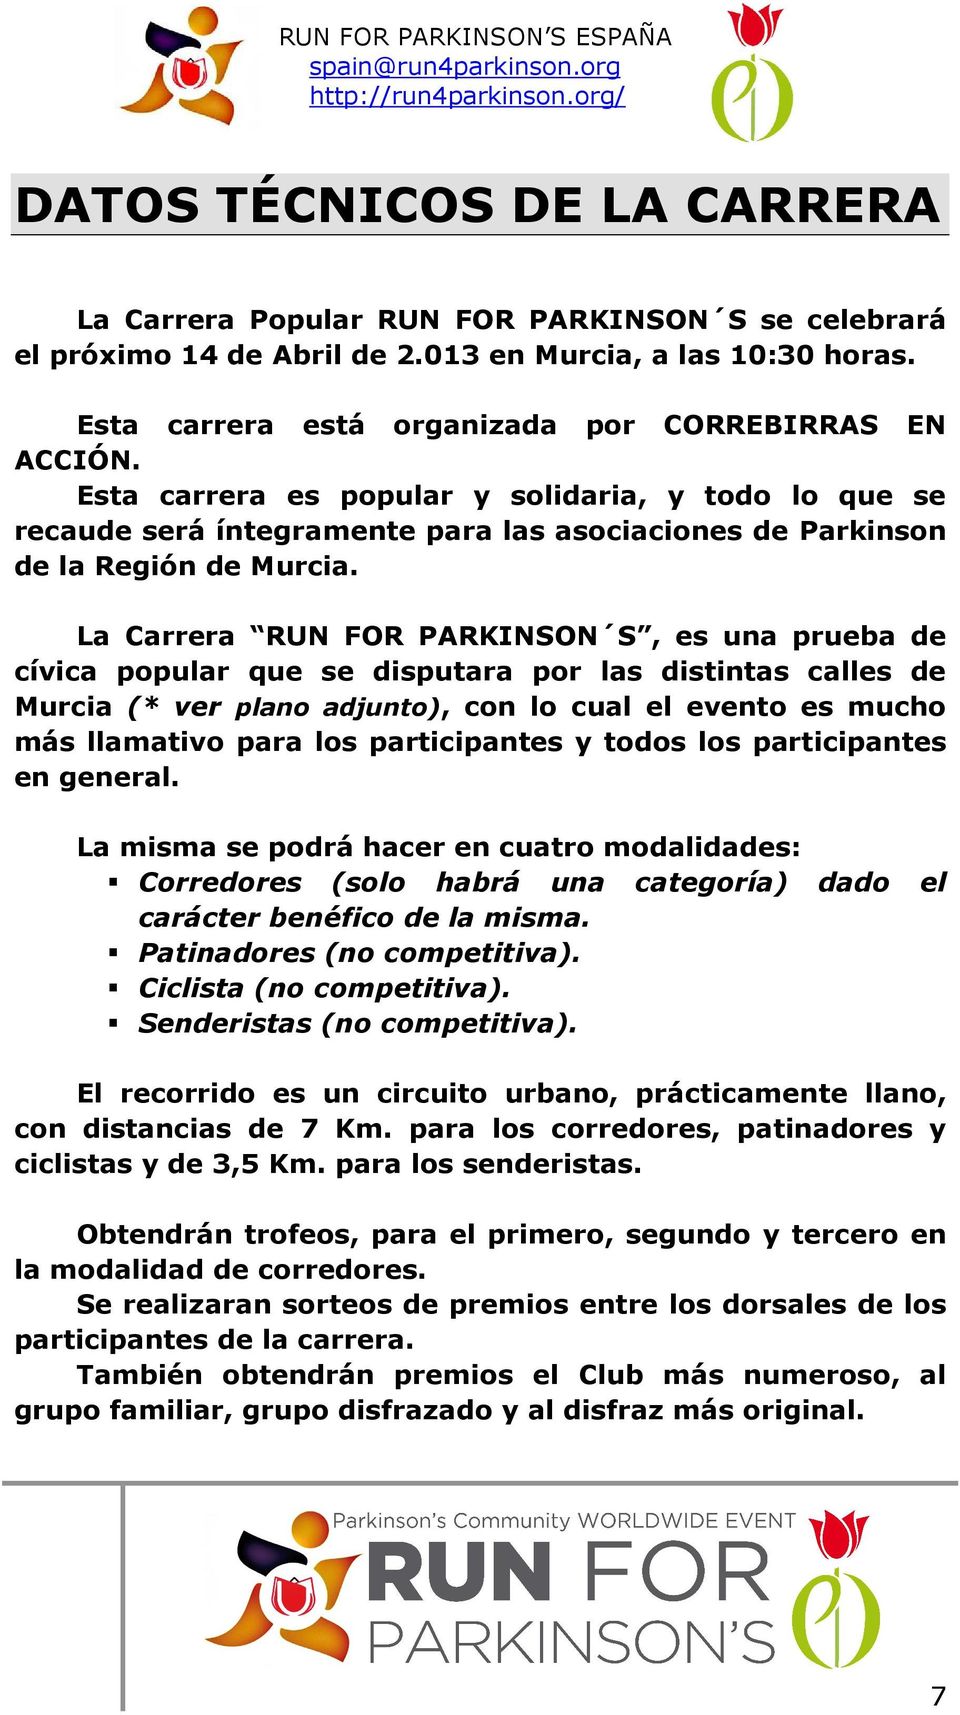 La Carrera RUN FOR PARKINSON S, es una prueba de cívica popular que se disputara por las distintas calles de Murcia (* ver plano adjunto), con lo cual el evento es mucho más llamativo para los